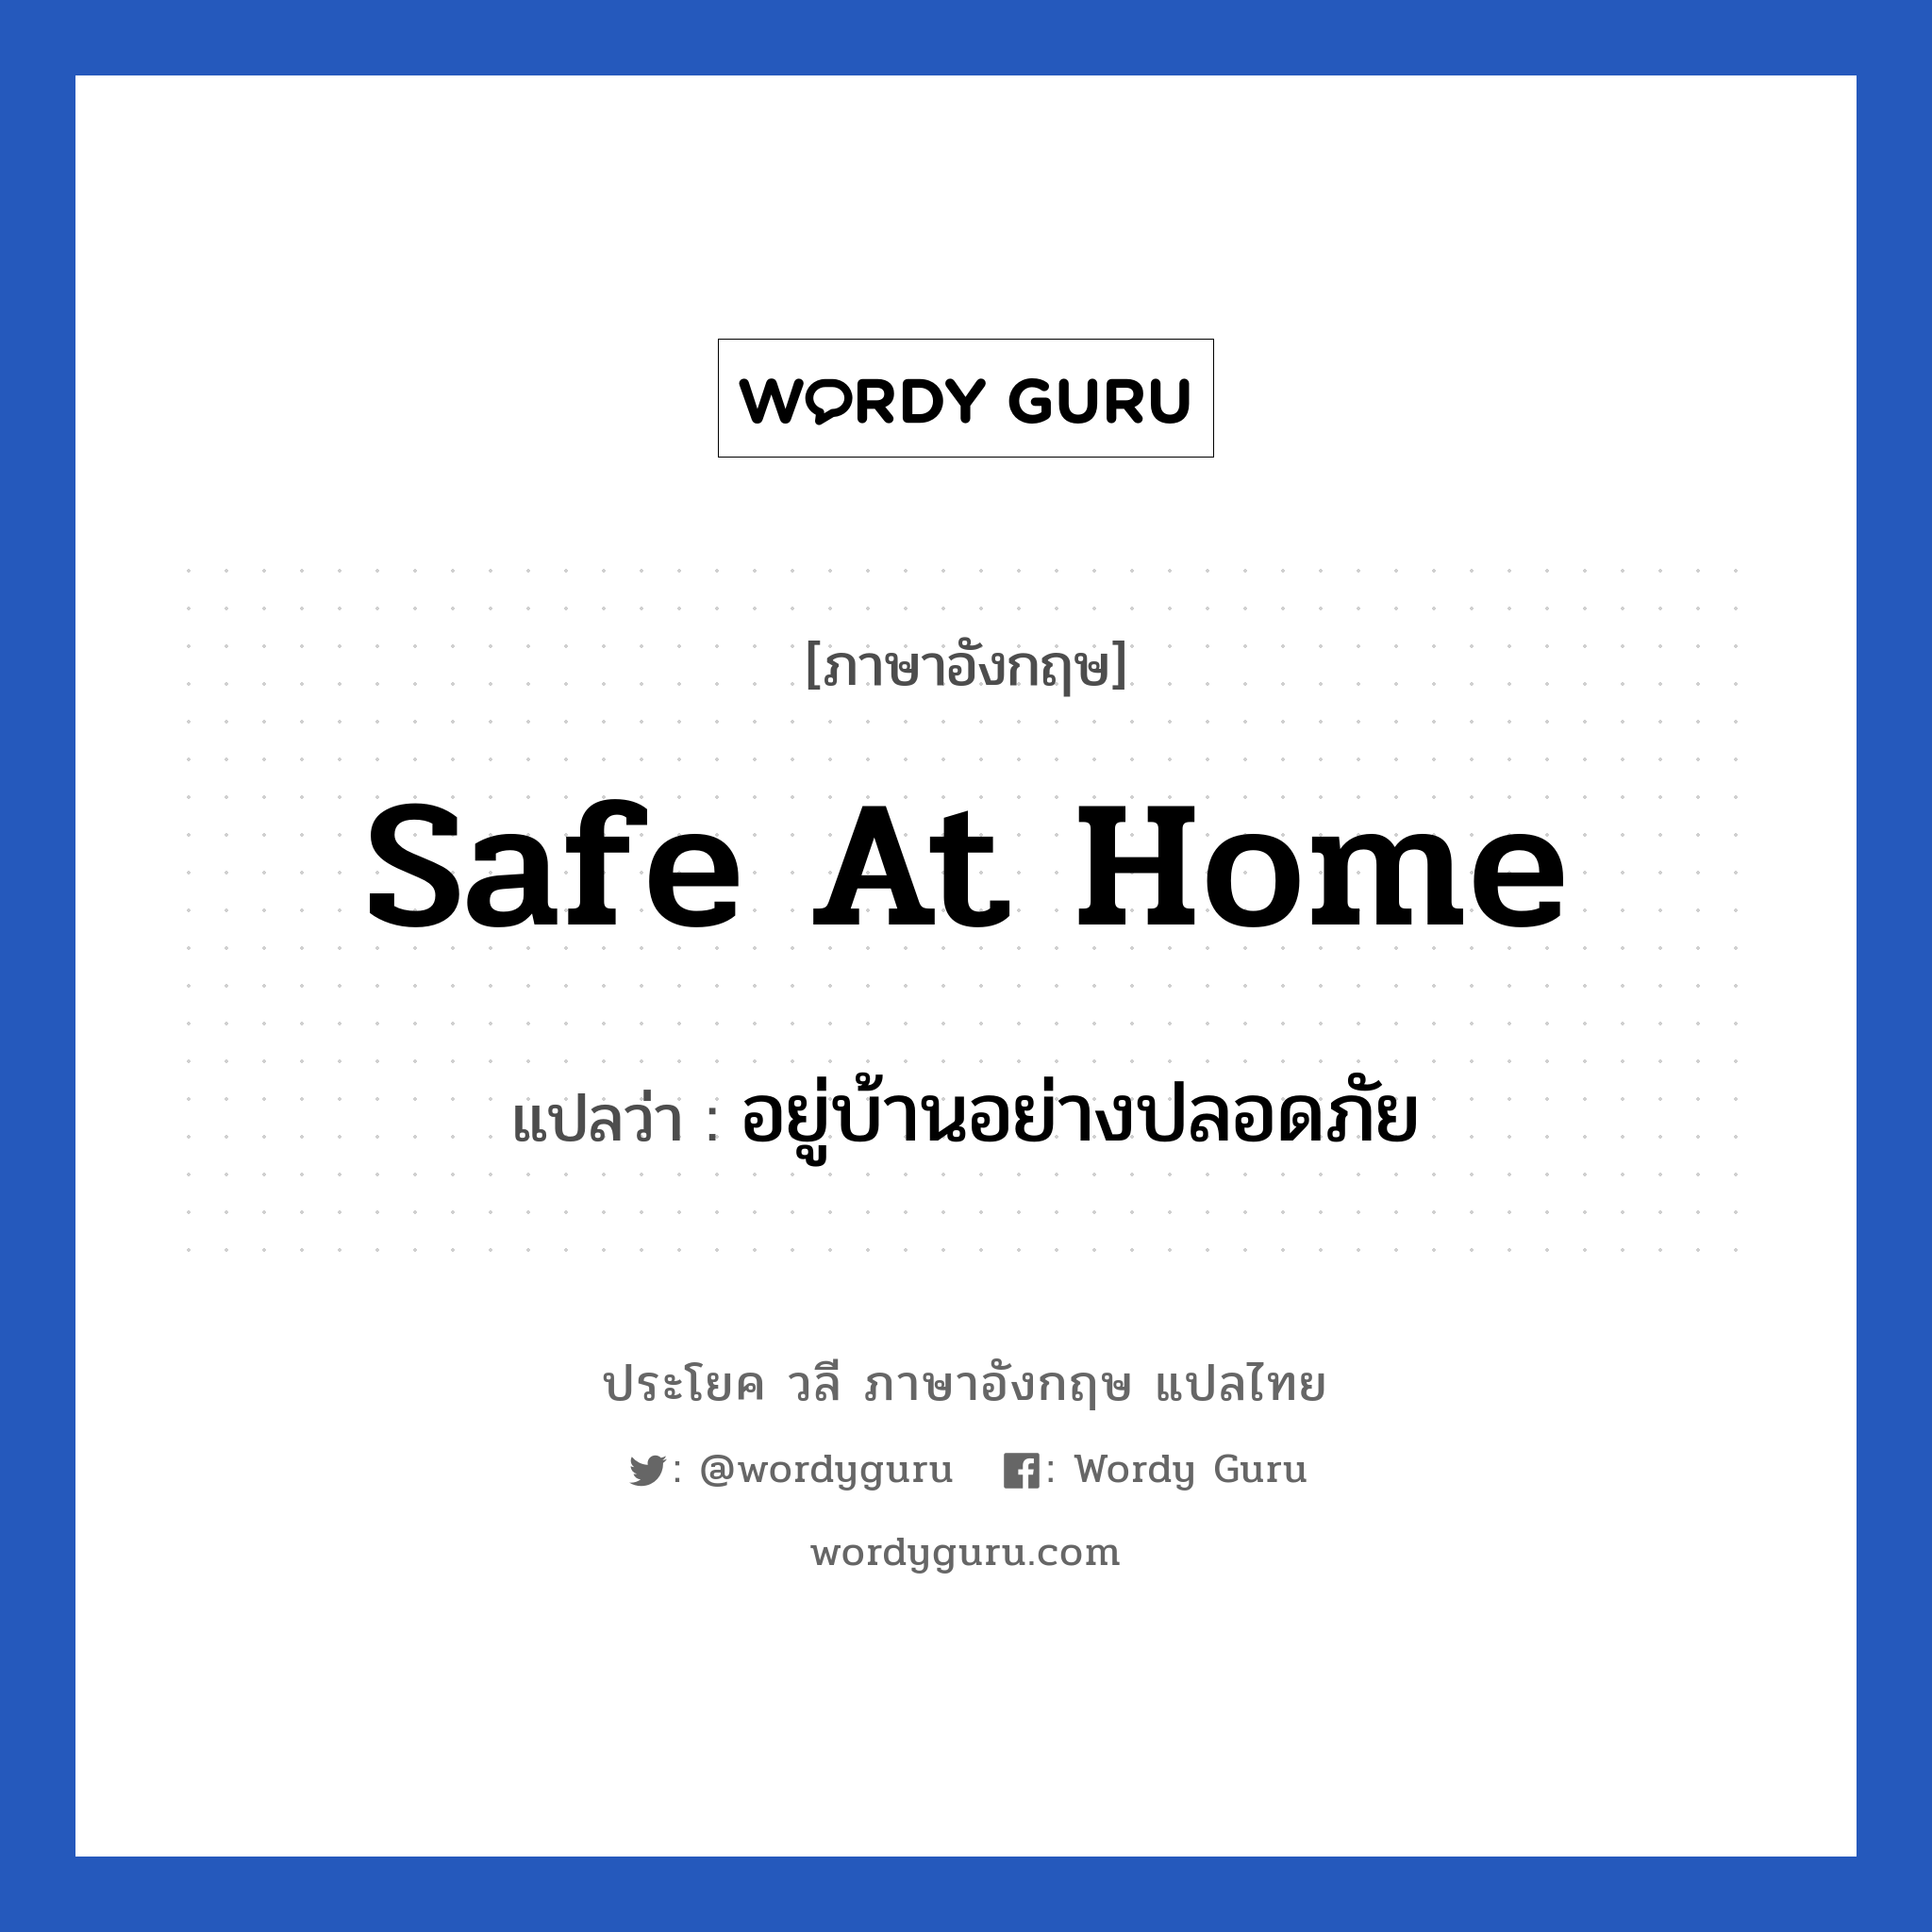 อยู่บ้านอย่างปลอดภัย ภาษาอังกฤษ?, วลีภาษาอังกฤษ อยู่บ้านอย่างปลอดภัย แปลว่า safe at home